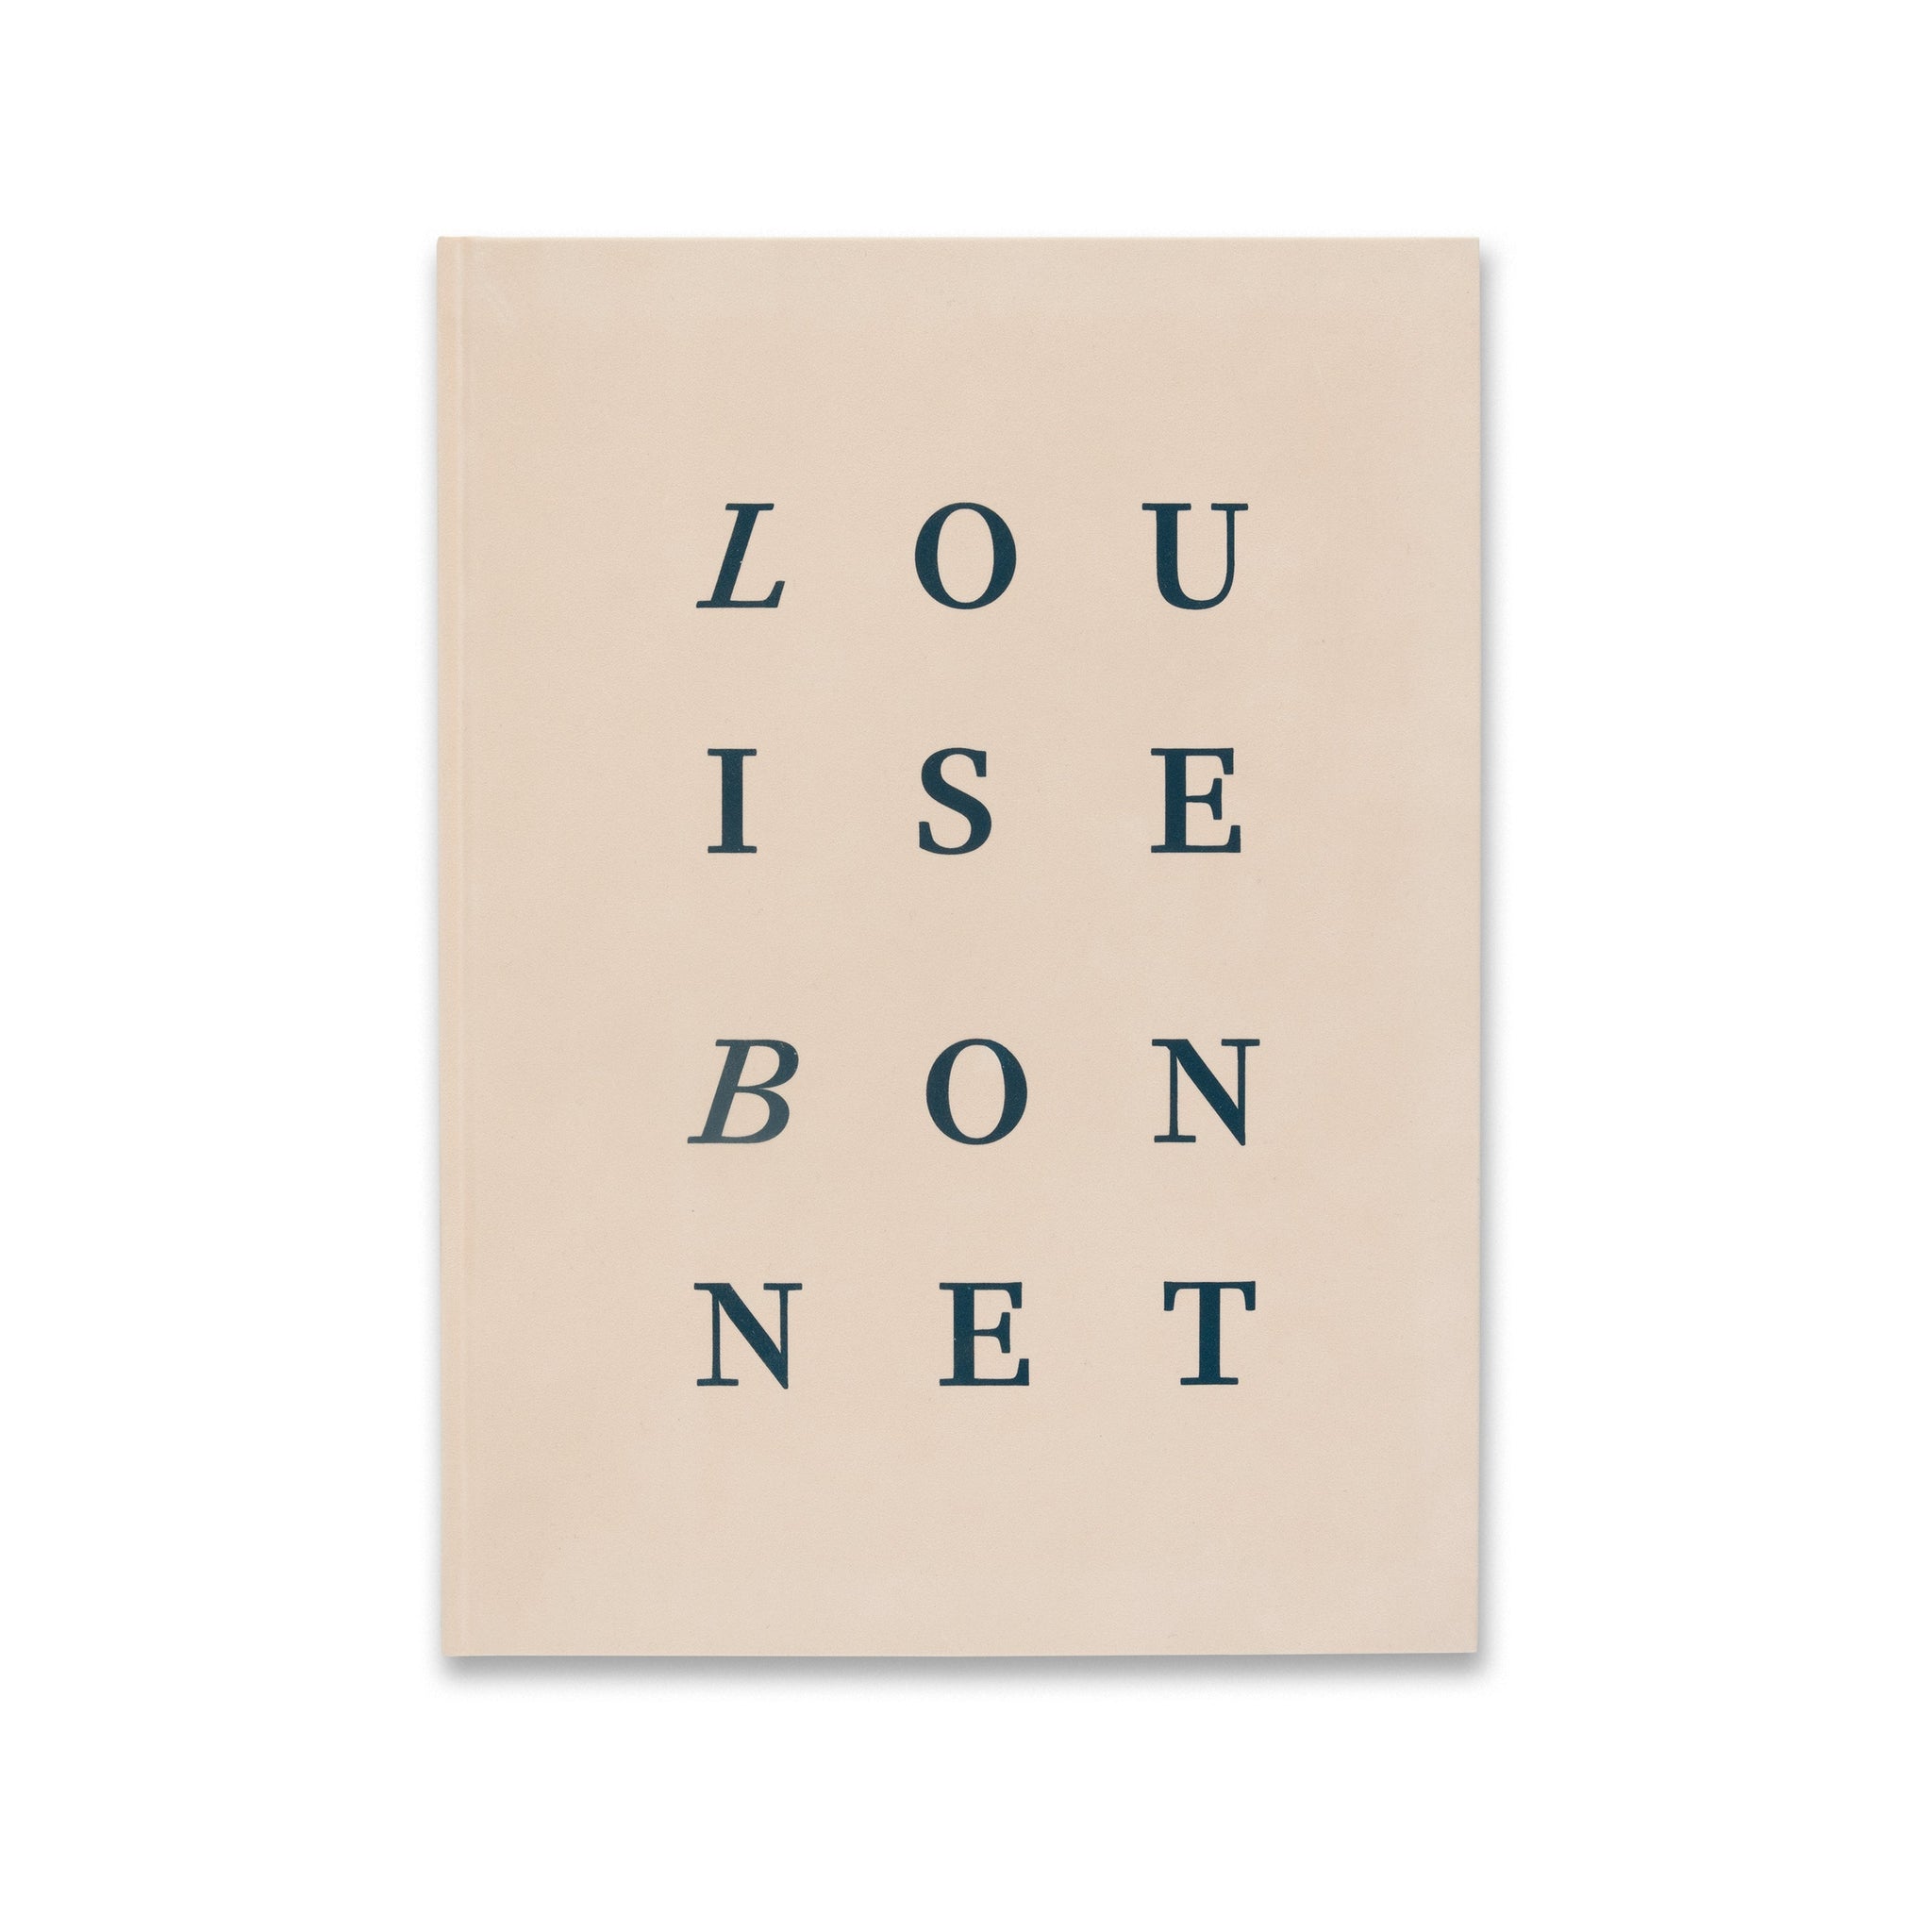 Essay, Louise Bonnet